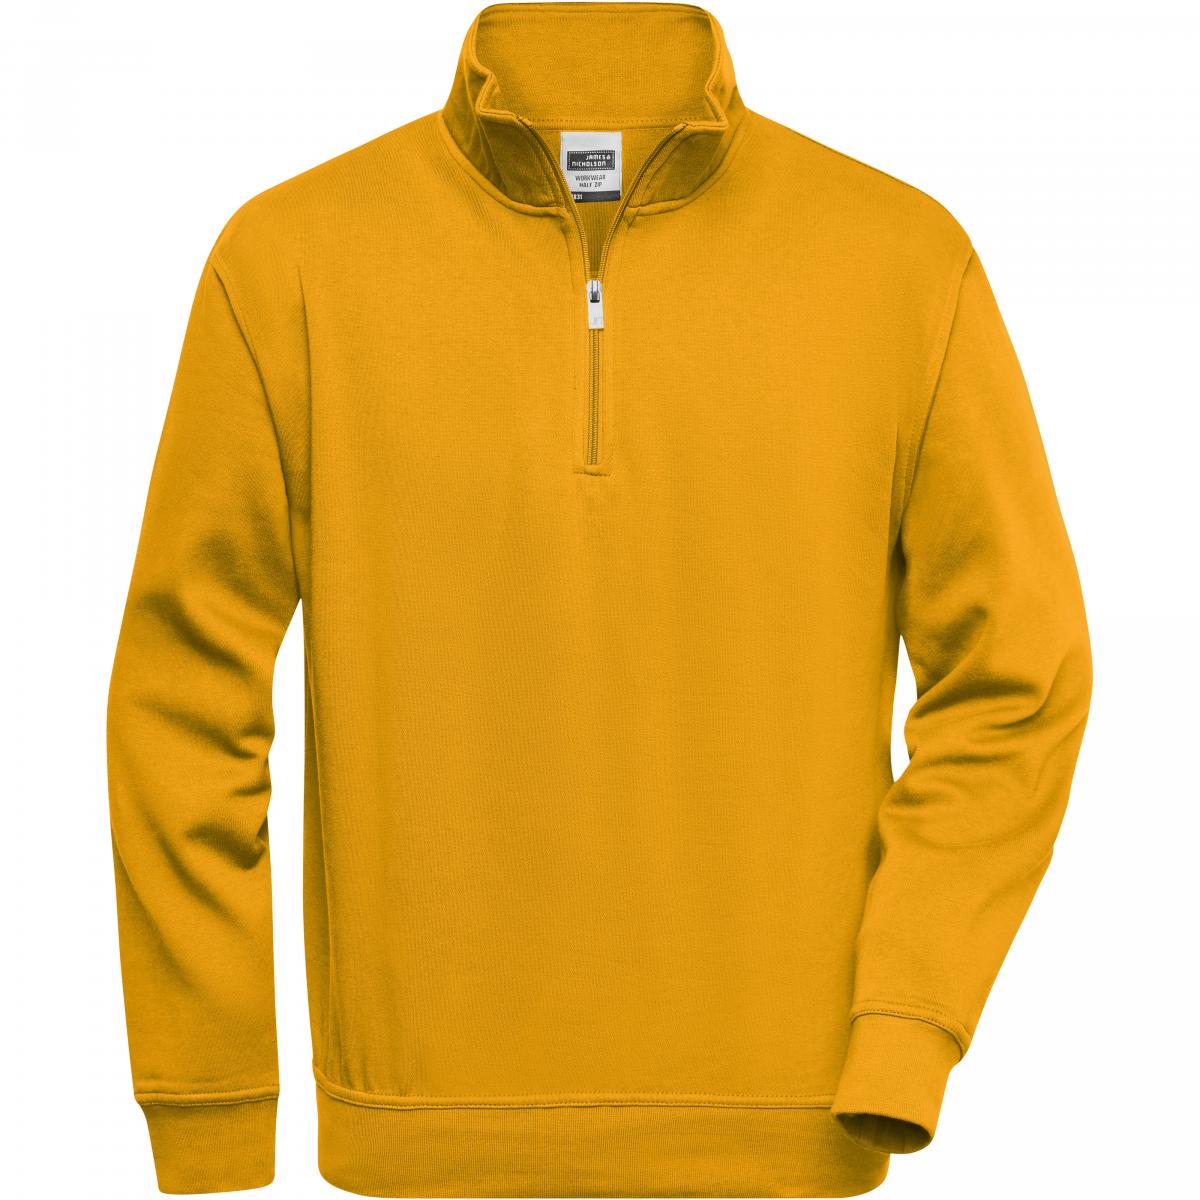 Hersteller: James+Nicholson Herstellernummer: JN831 Artikelbezeichnung: Workwear Half Zip Sweatshirt +Waschbar bis 60 °C Farbe: Gold Yellow